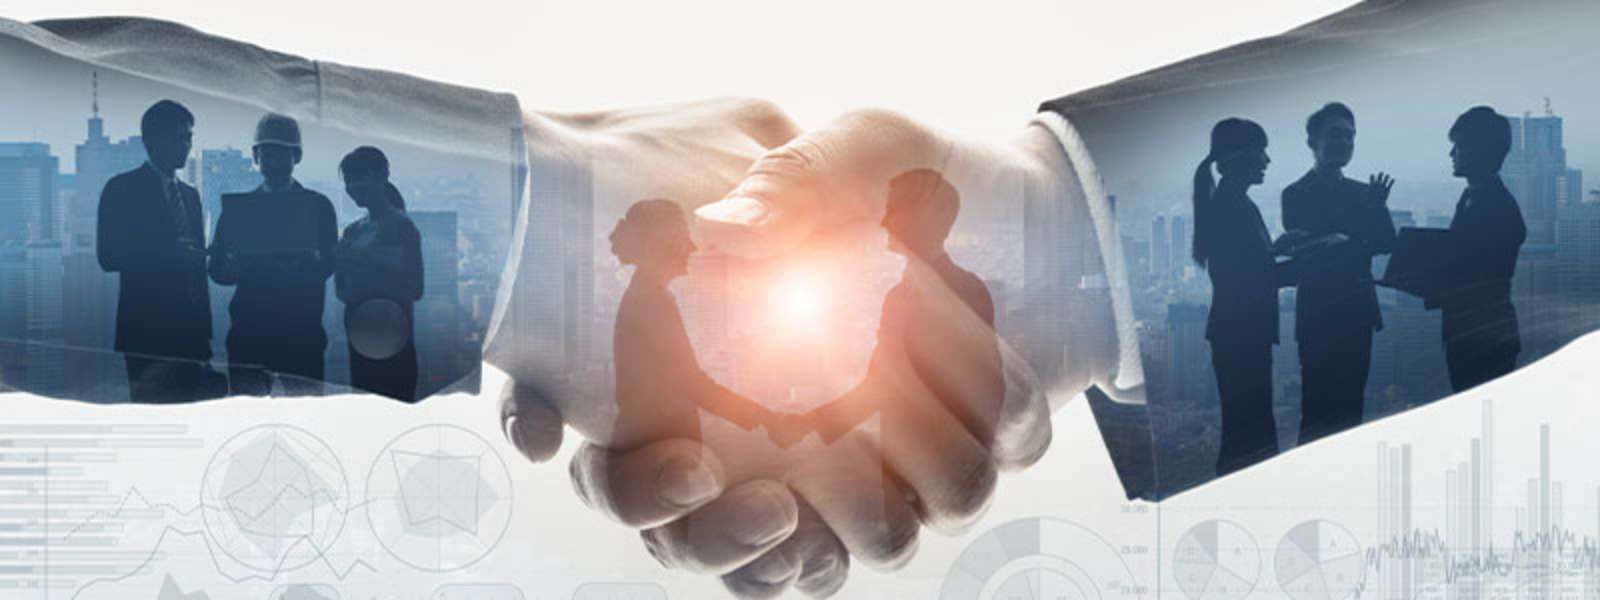 handshake representing business deal